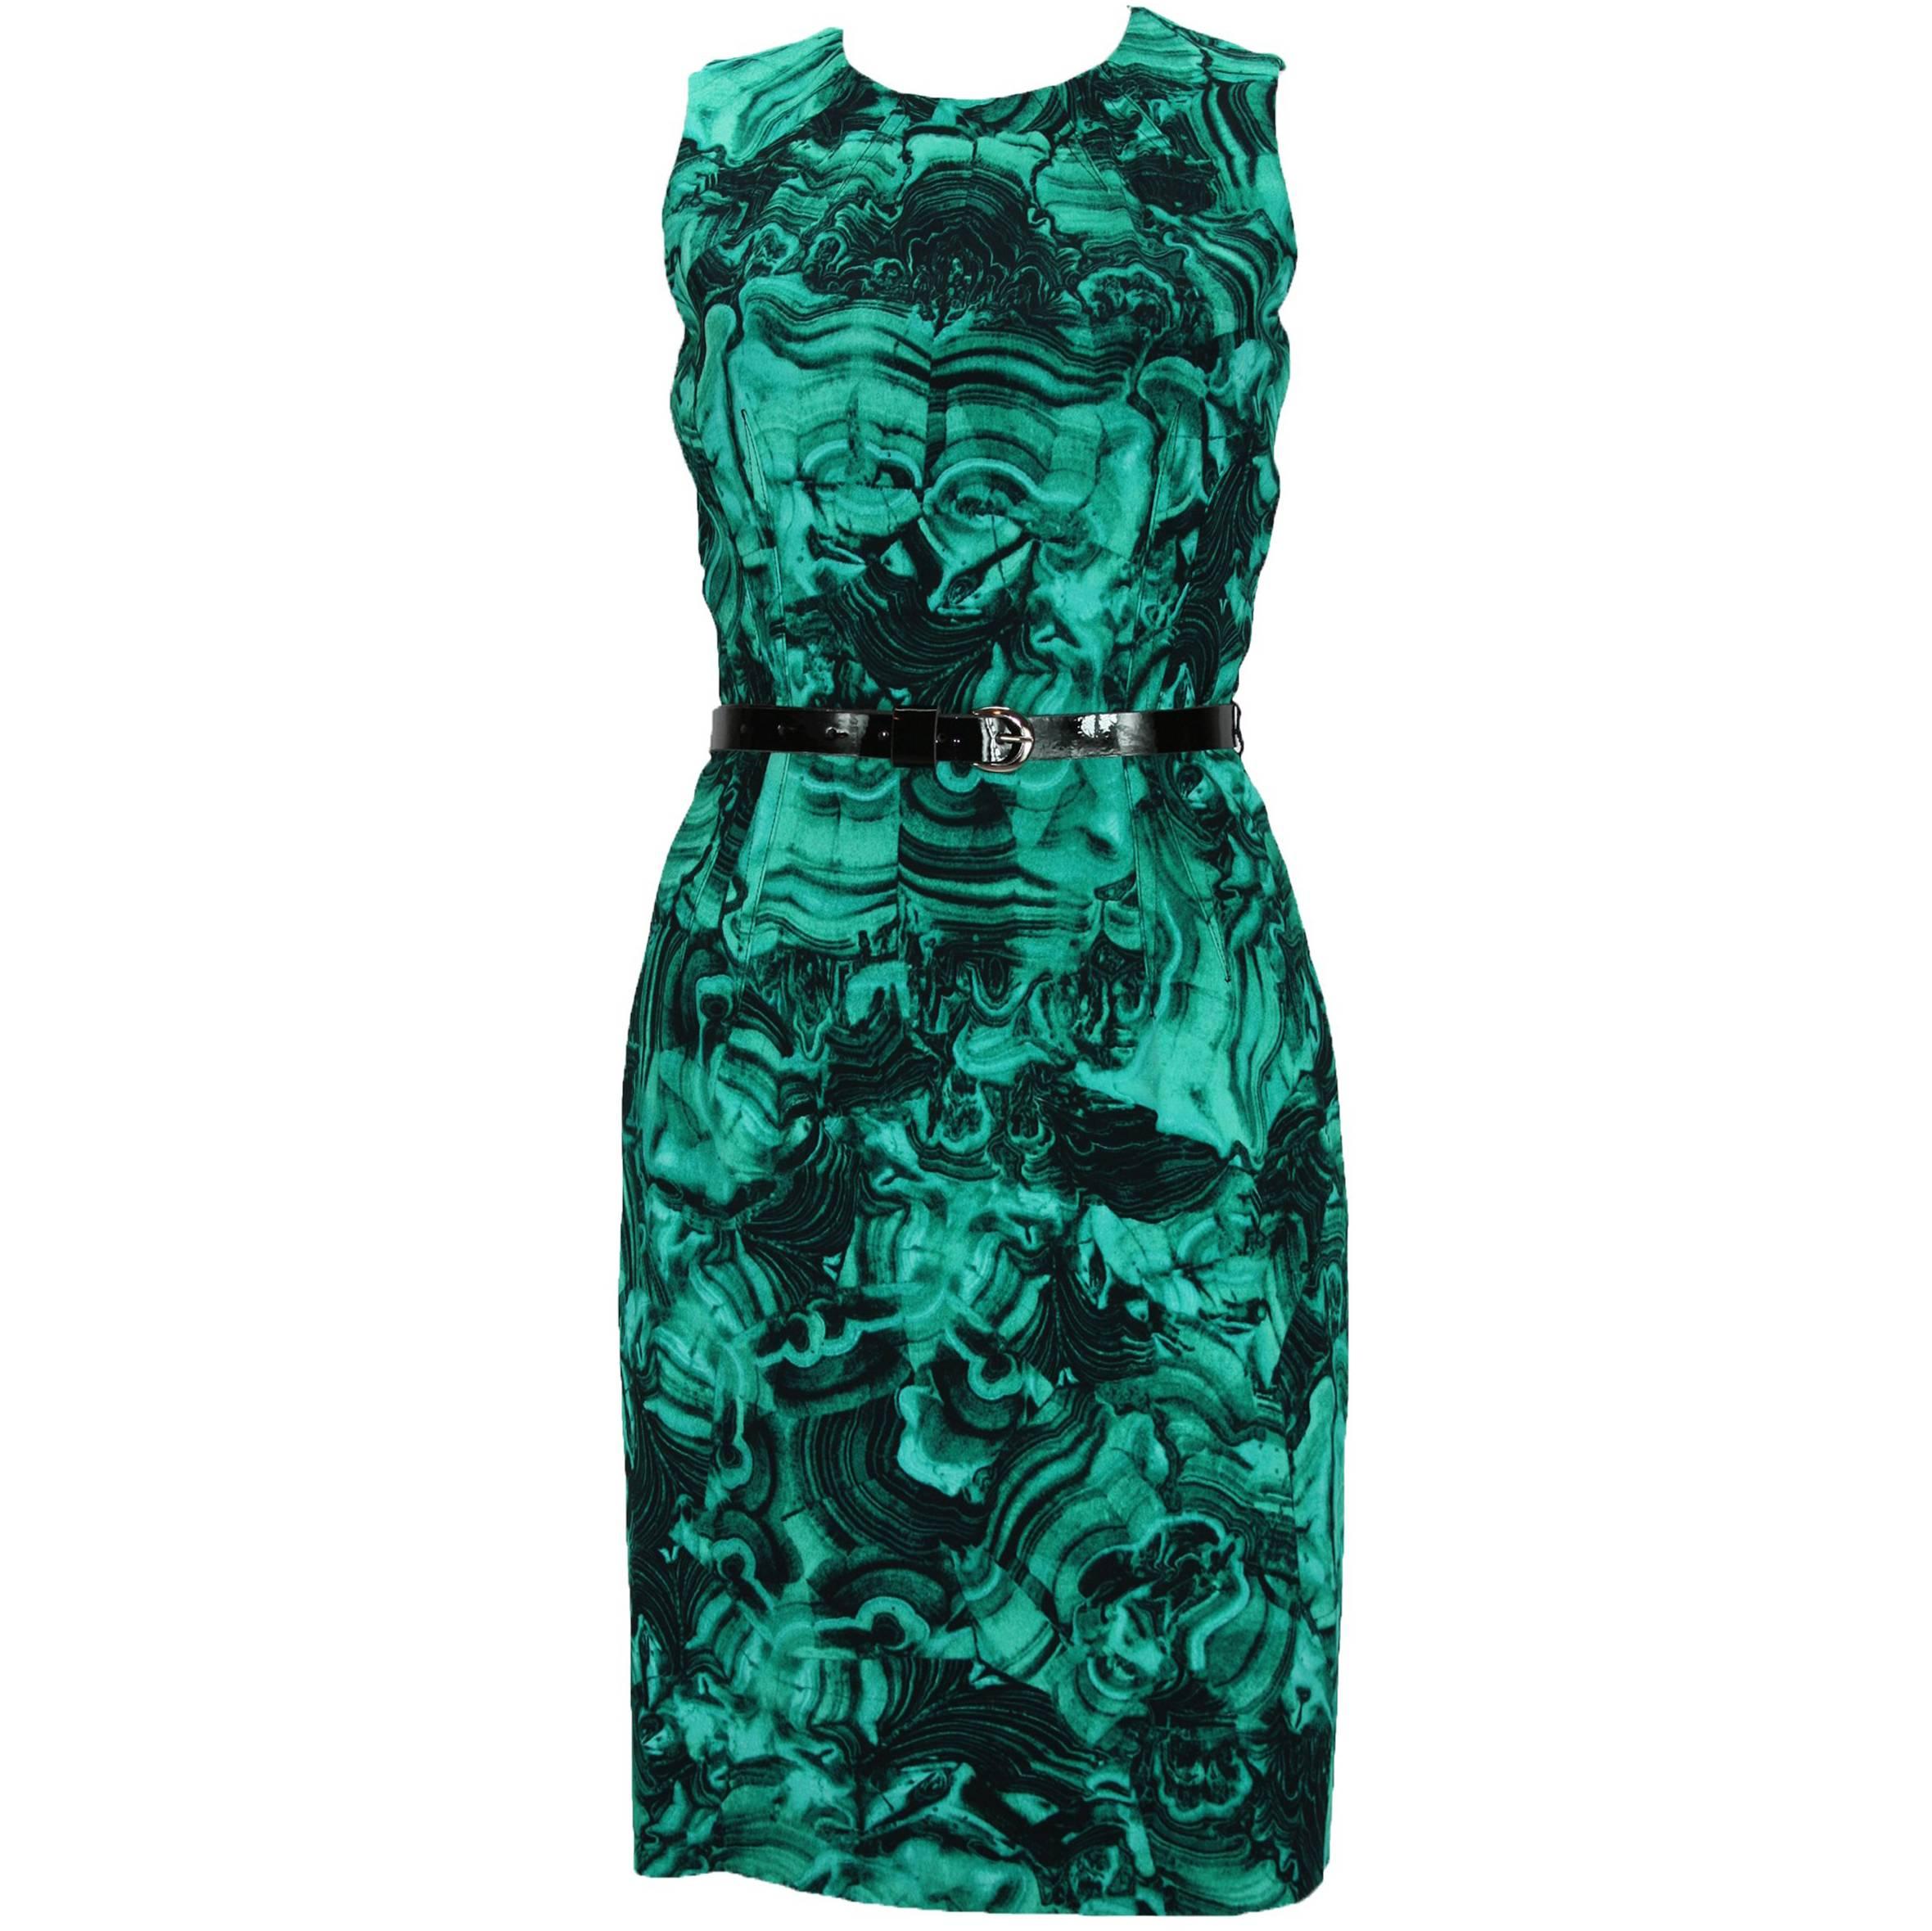 MICHAEL KORS Emerald Green Duquette's Iconic Malachite Print Coktail Dress 4 For Sale